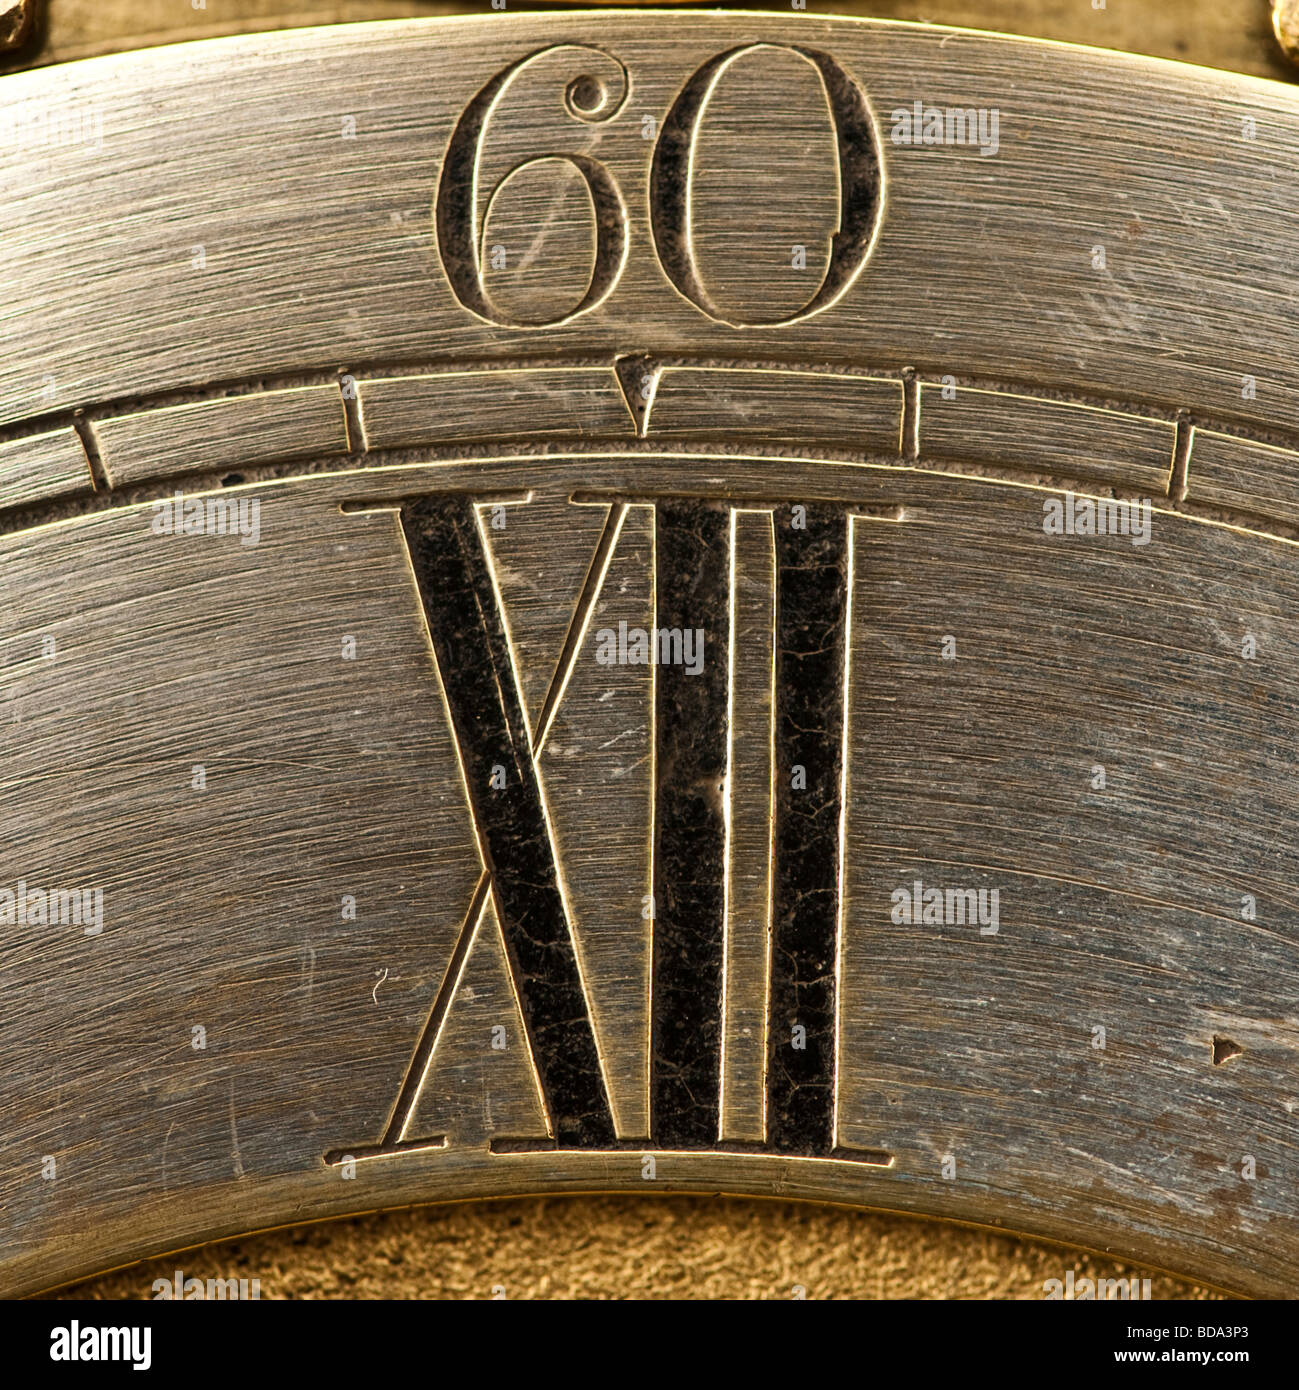 Ancienne horloge montrant 60 et XII Banque D'Images